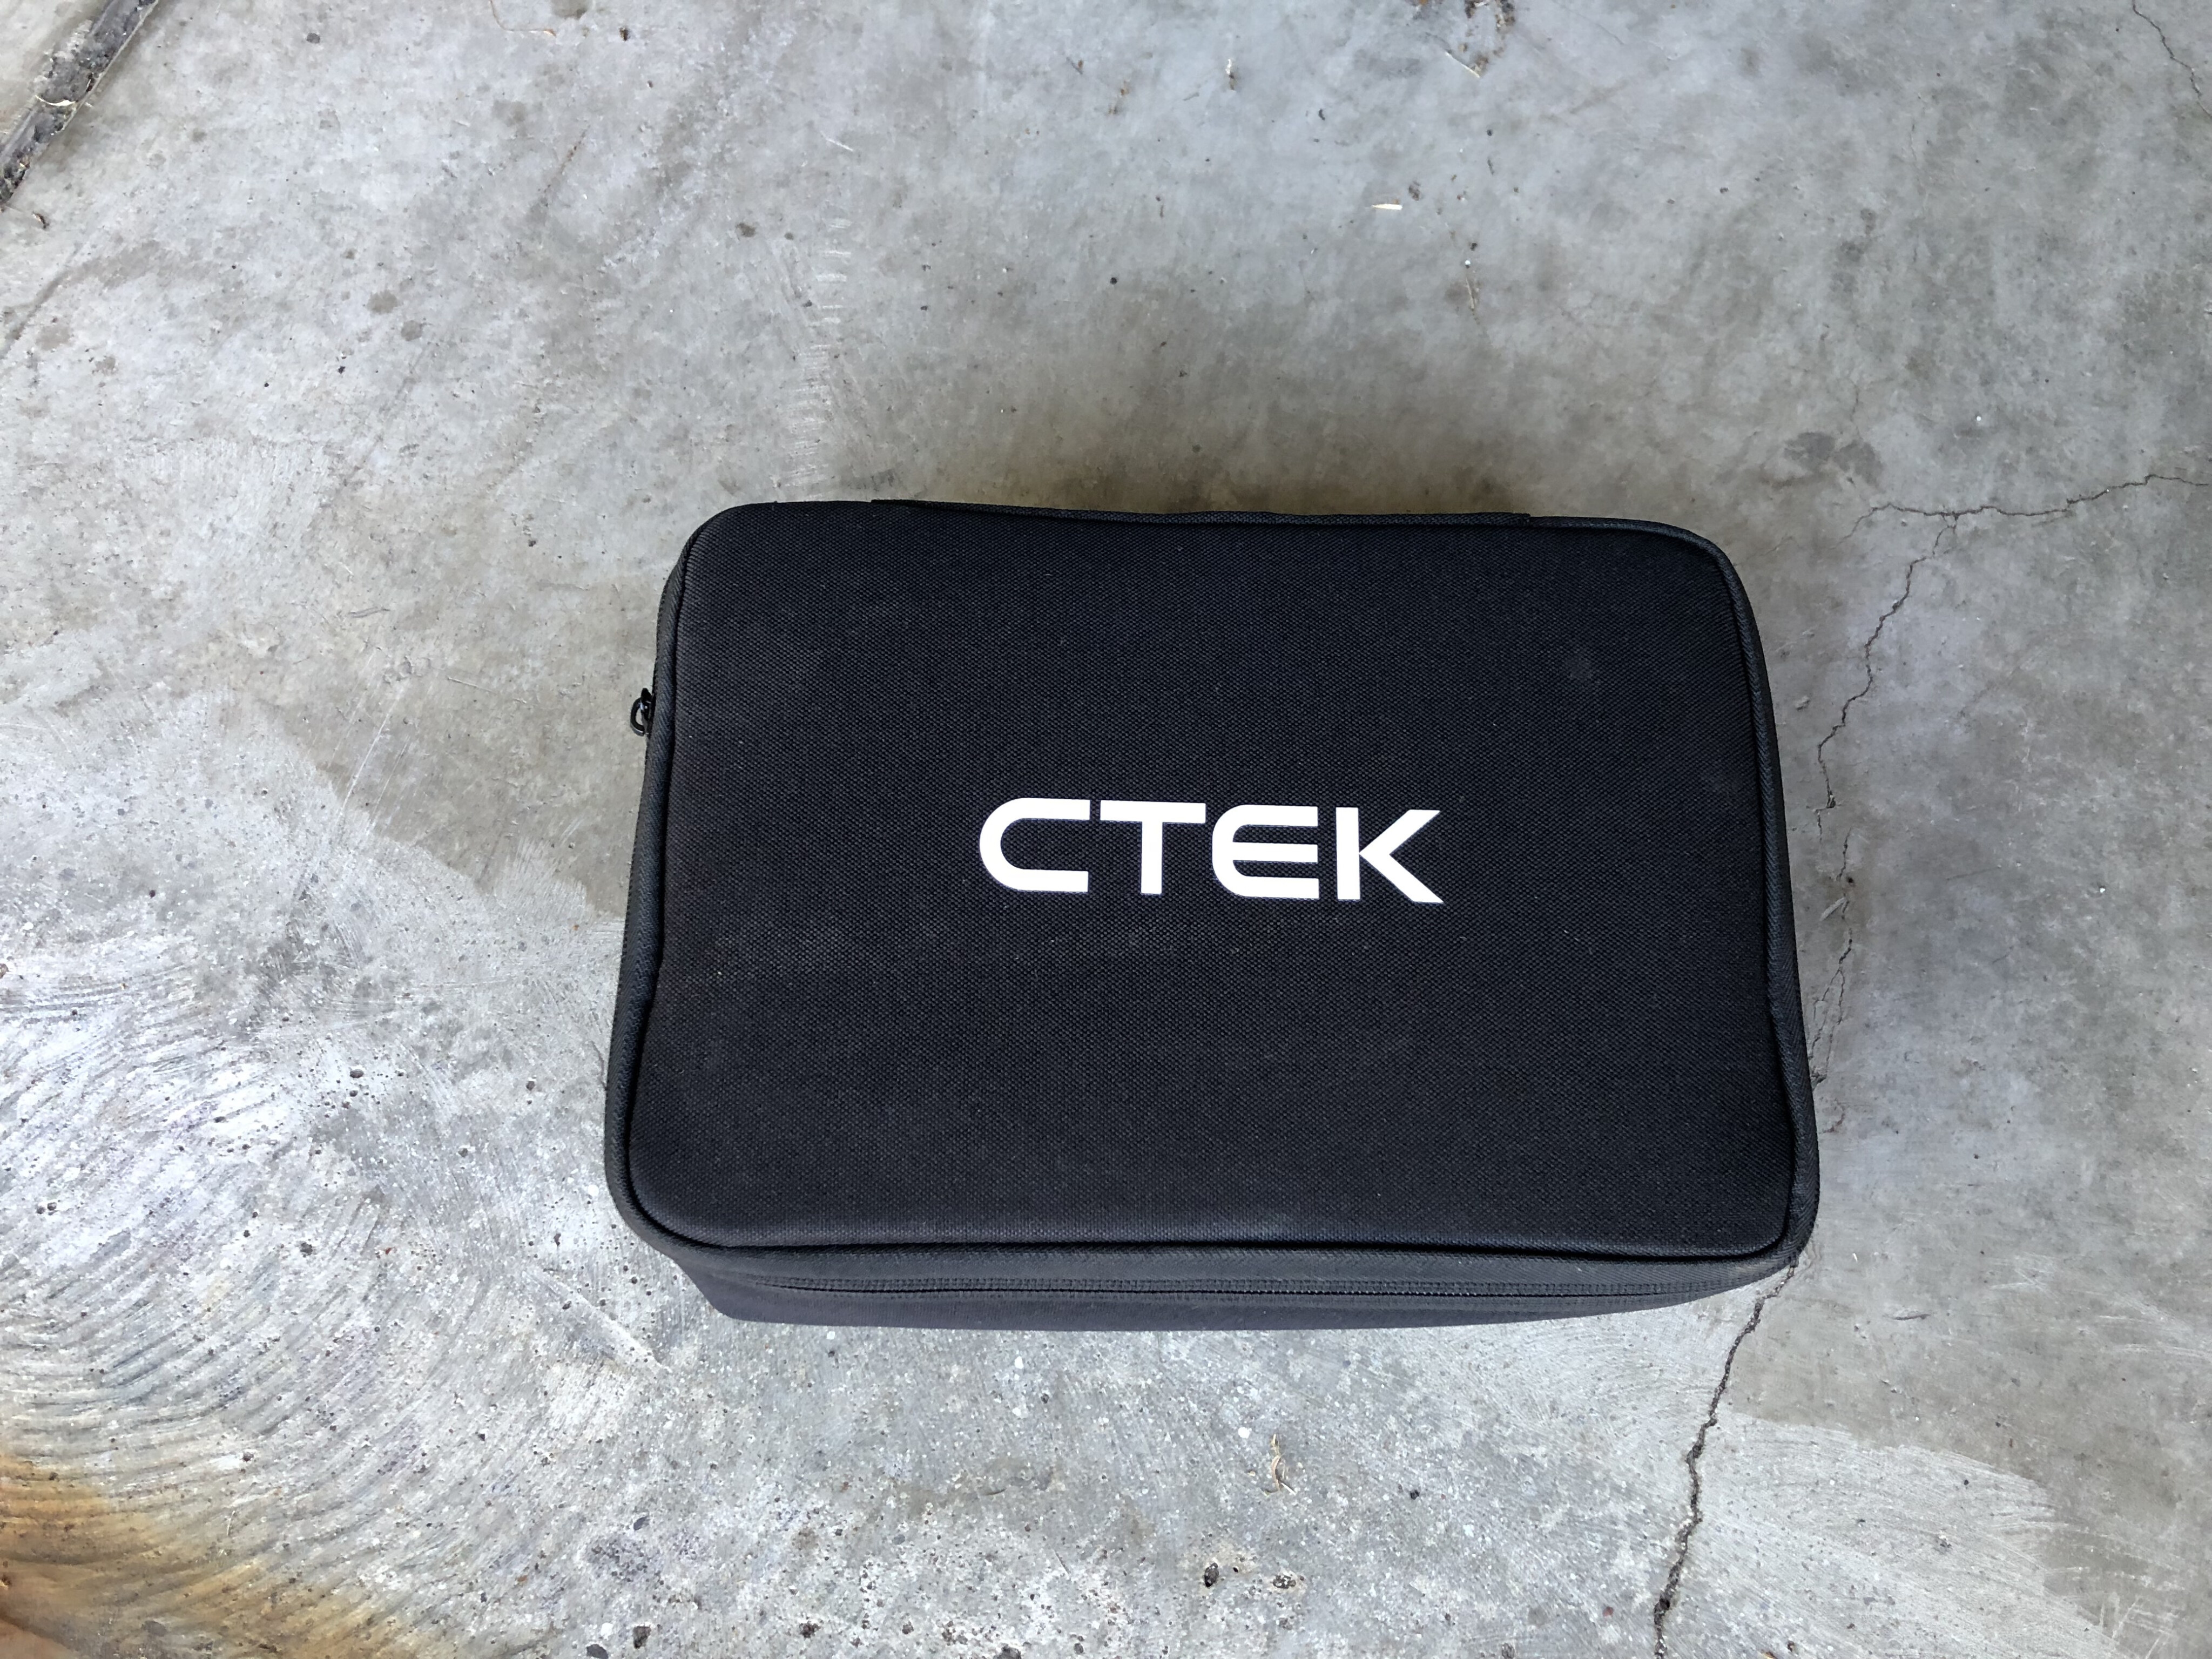 496f1314/ctek cs one battery charger 1 JPG